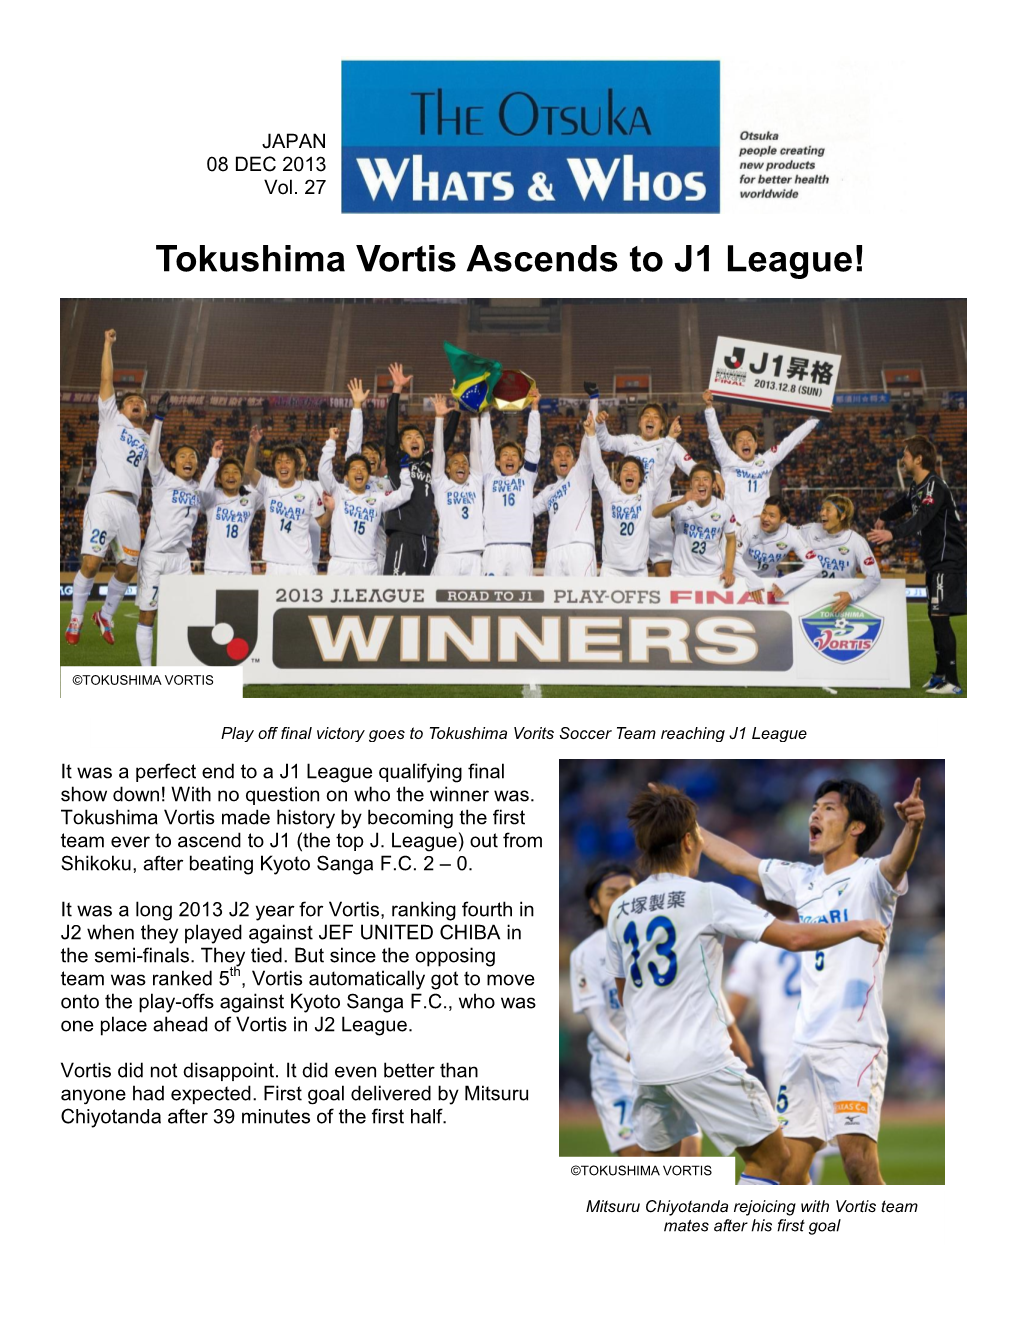 Tokushima Vortis Ascends to J1 League!